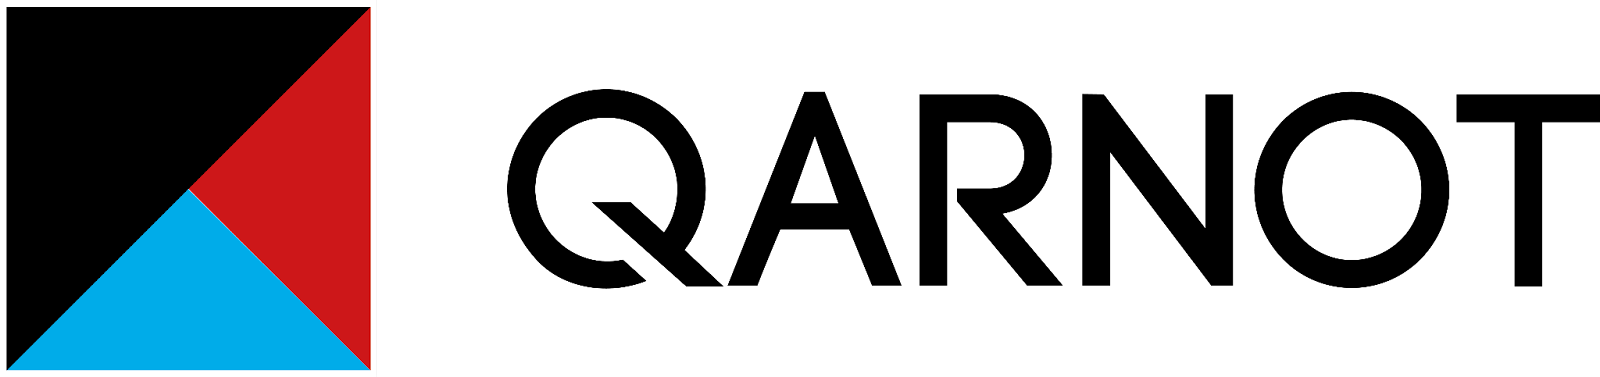 Qarnot Computing logo